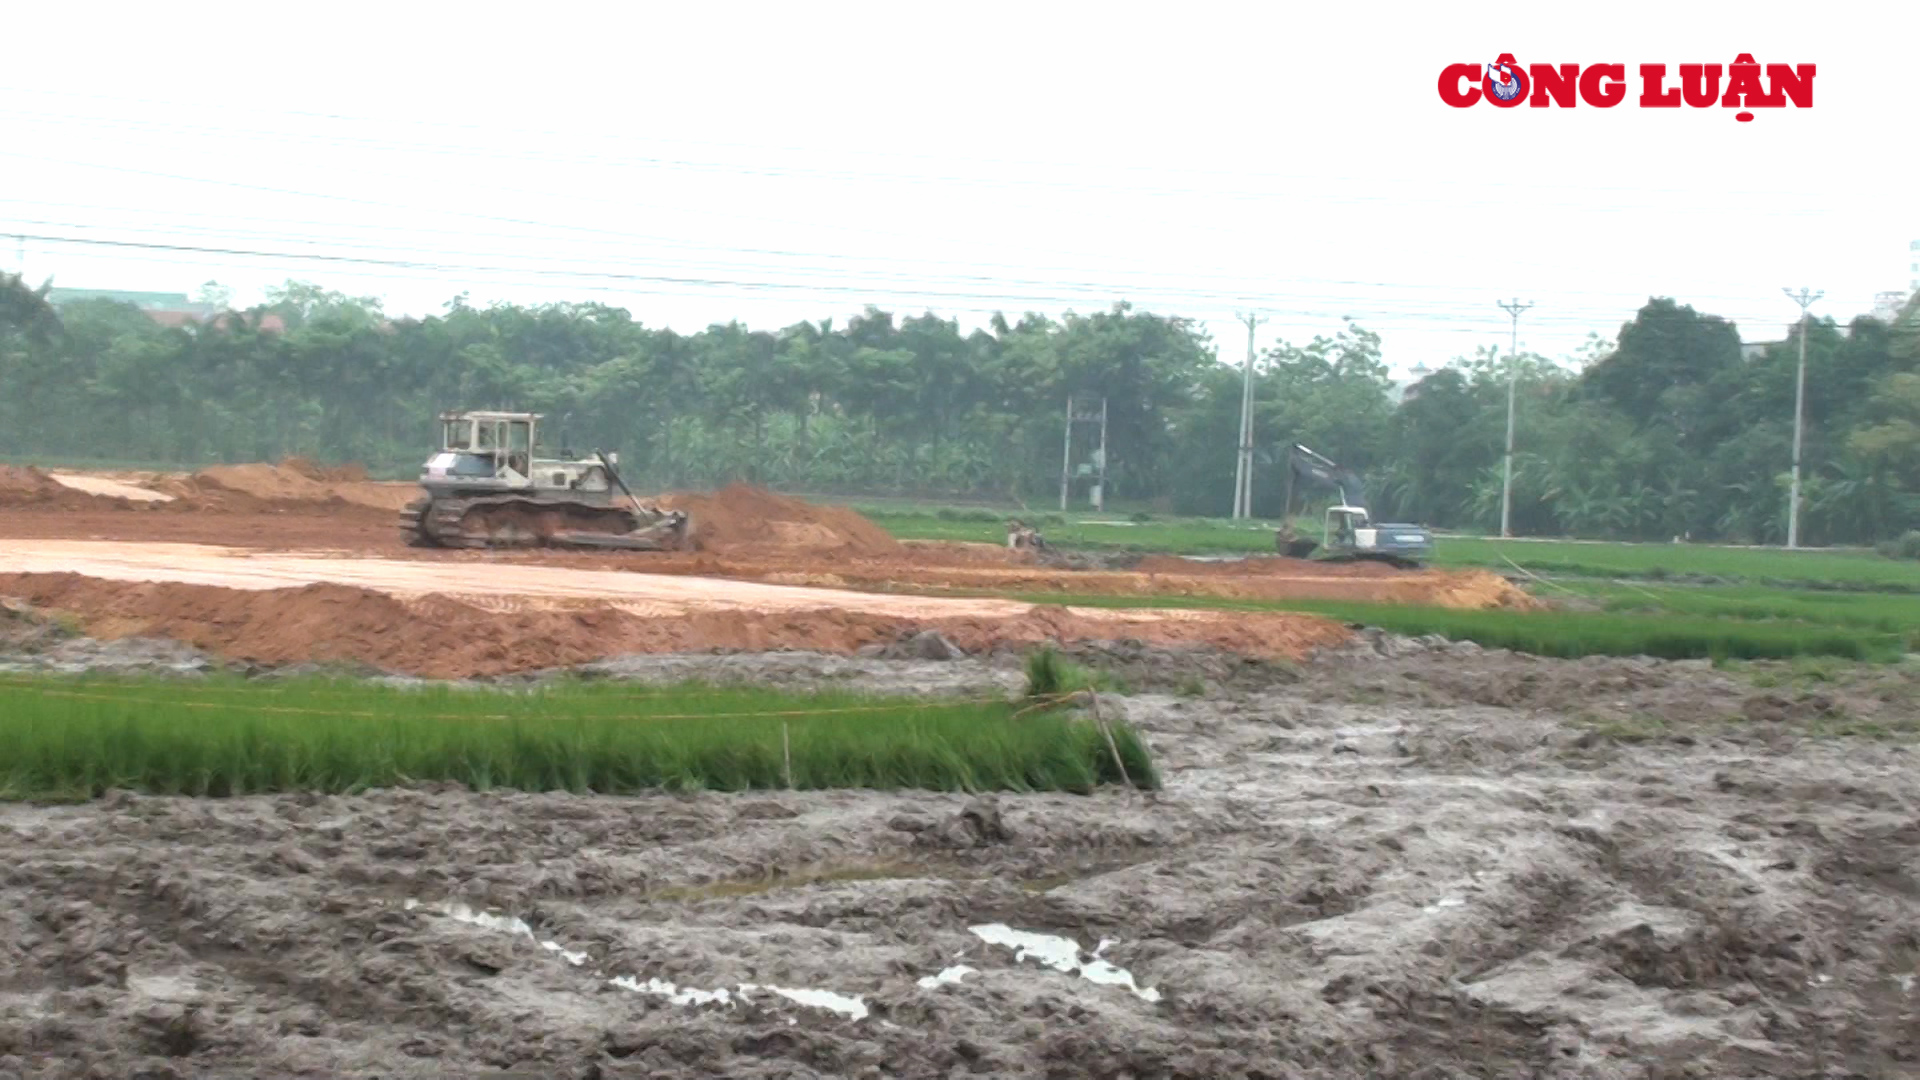 Nhiều ruộng lúa đang lên đòng bị máy múc phá hủy trong quá trình thi công dự án.